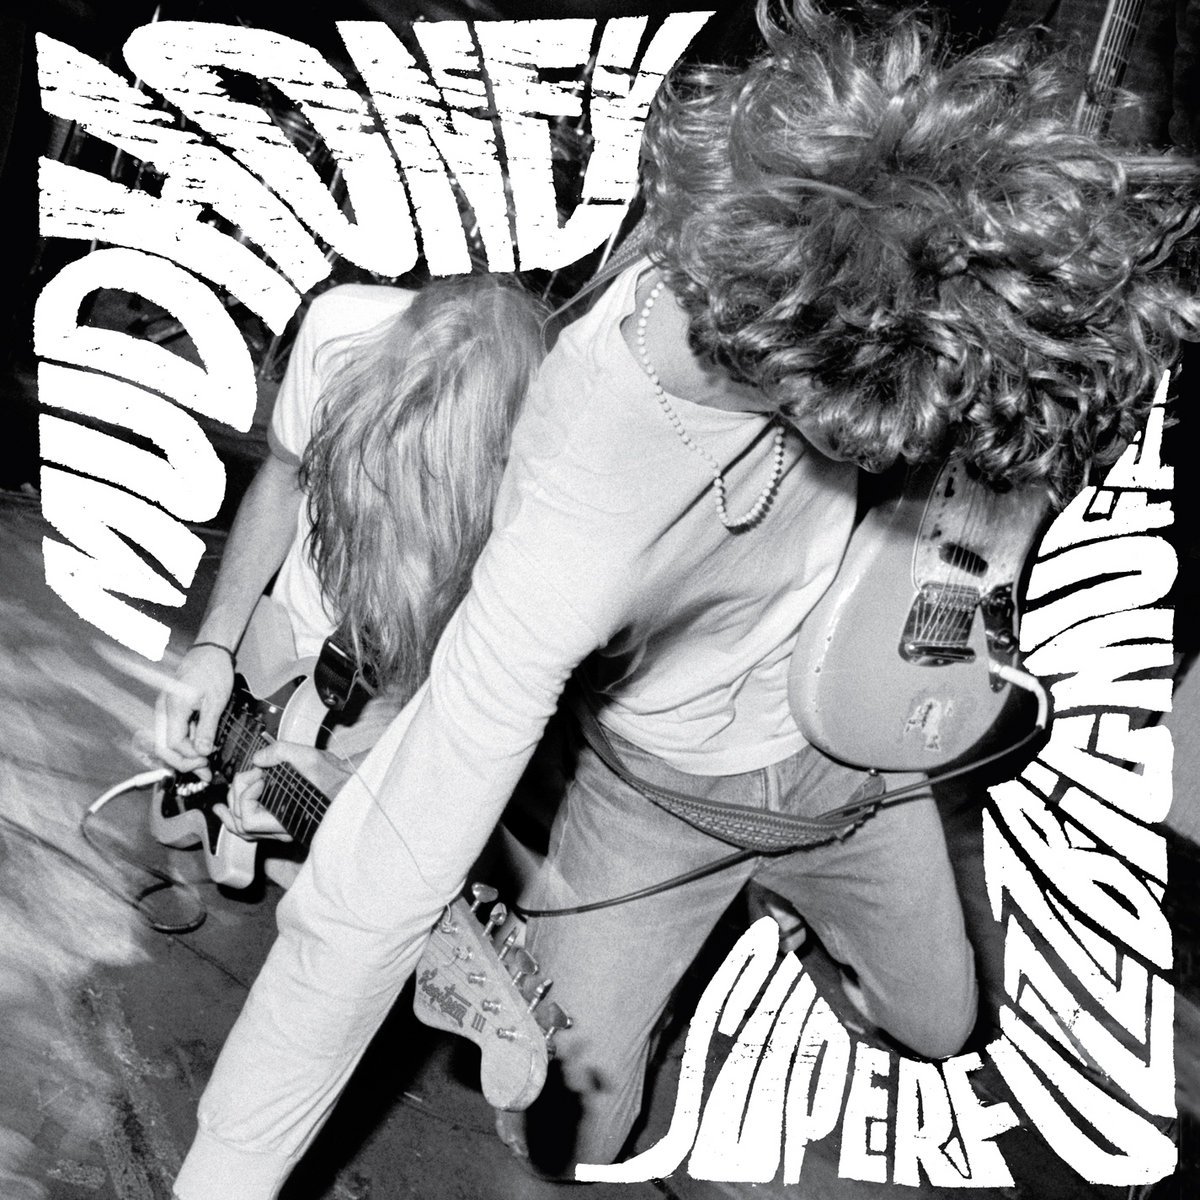 Mudhoney - Superfuzz Bigmuff (Beginners Guide to Grunge)